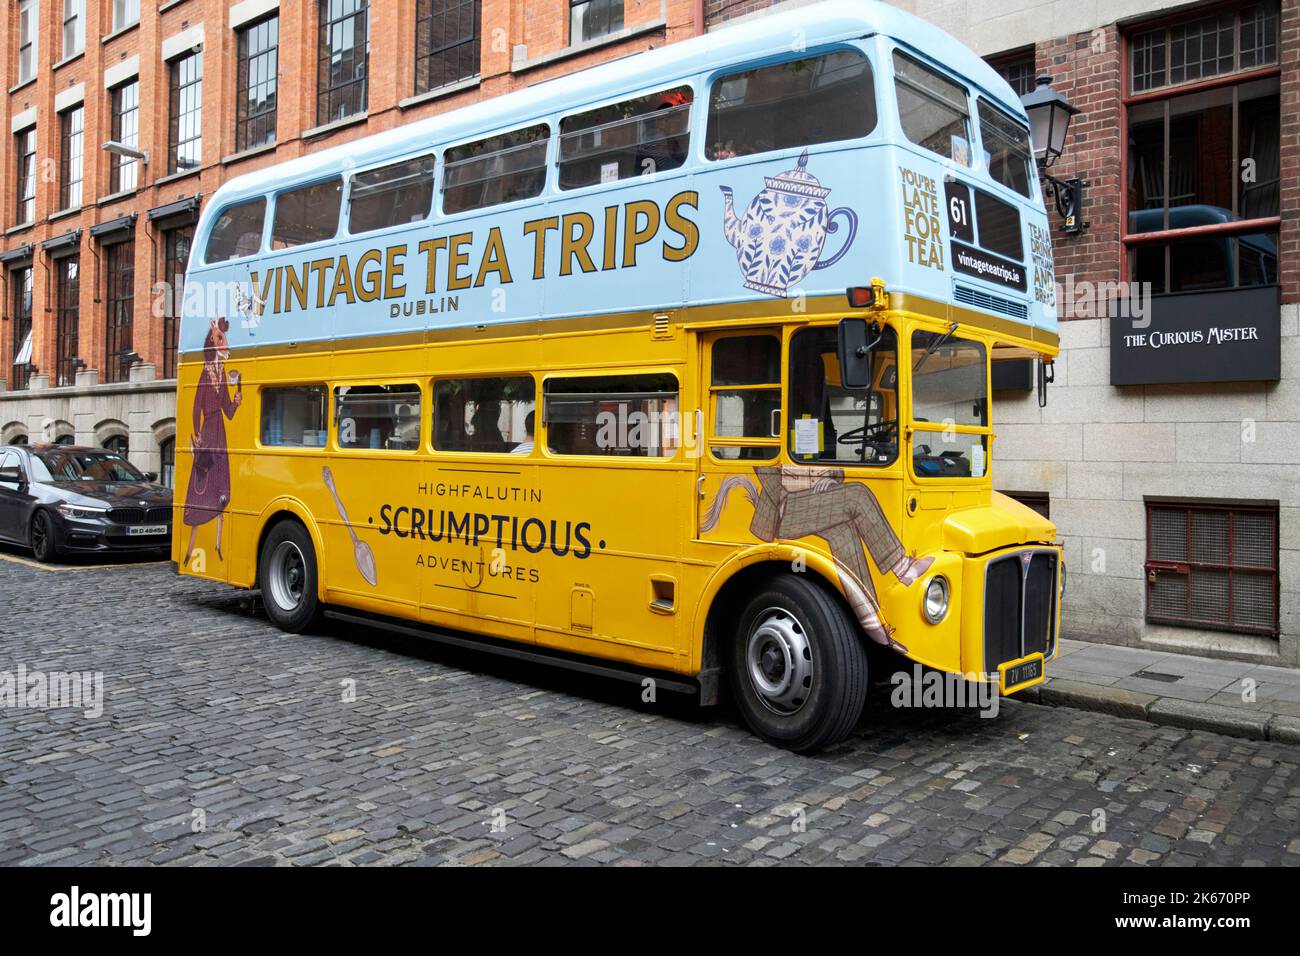 vintage tea trips bus tour dublin republic of ireland Stock Photo